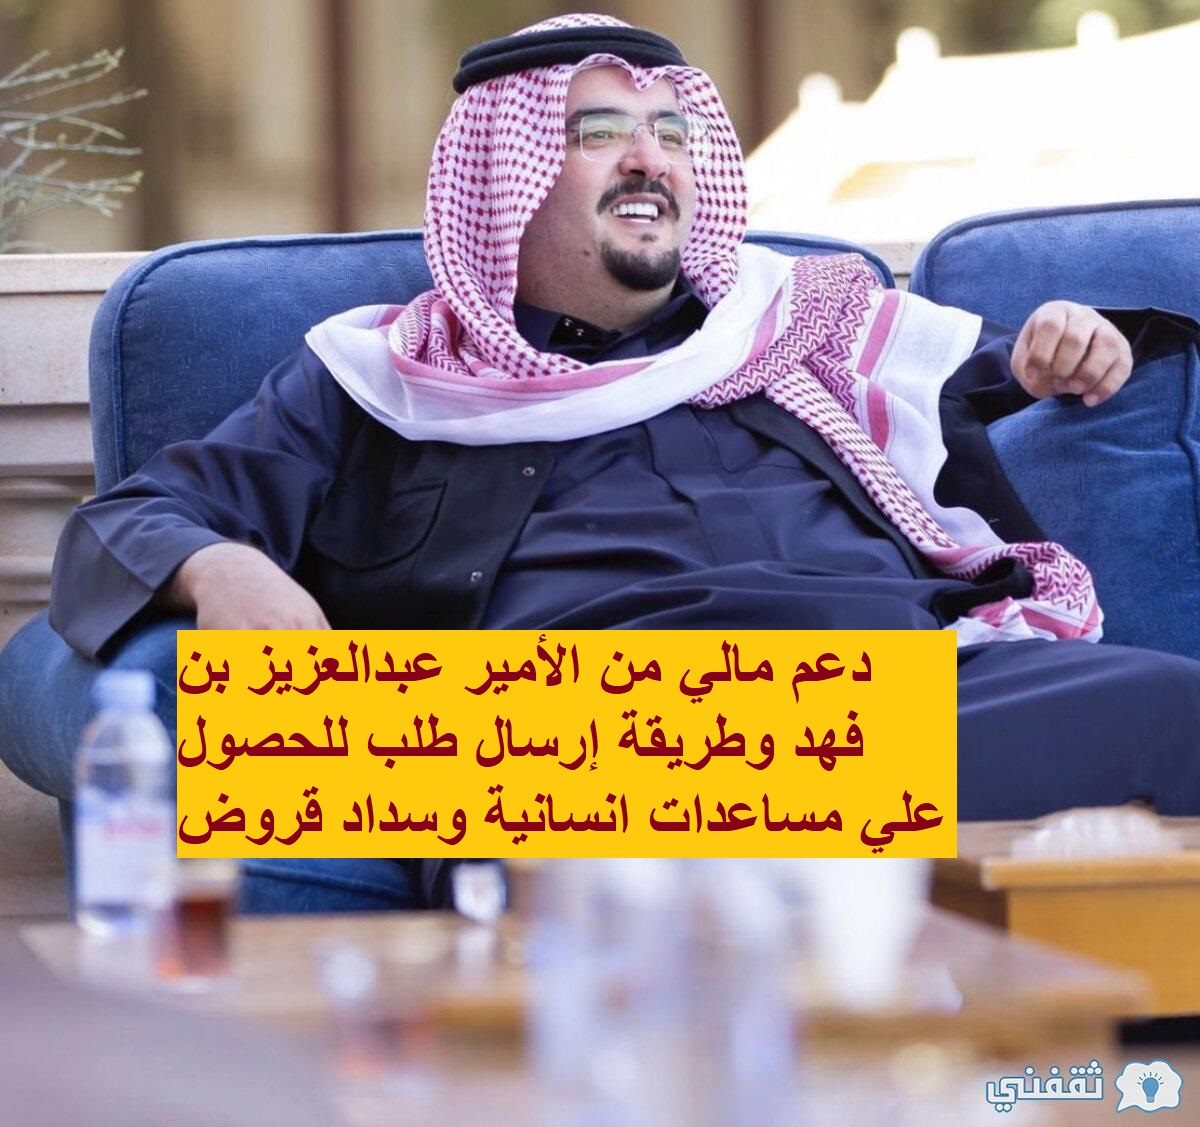 دعم مالي من الأمير عبدالعزيز بن فهد وطريقة إرسال طلب للحصول علي مساعدات انسانية وسداد قروض